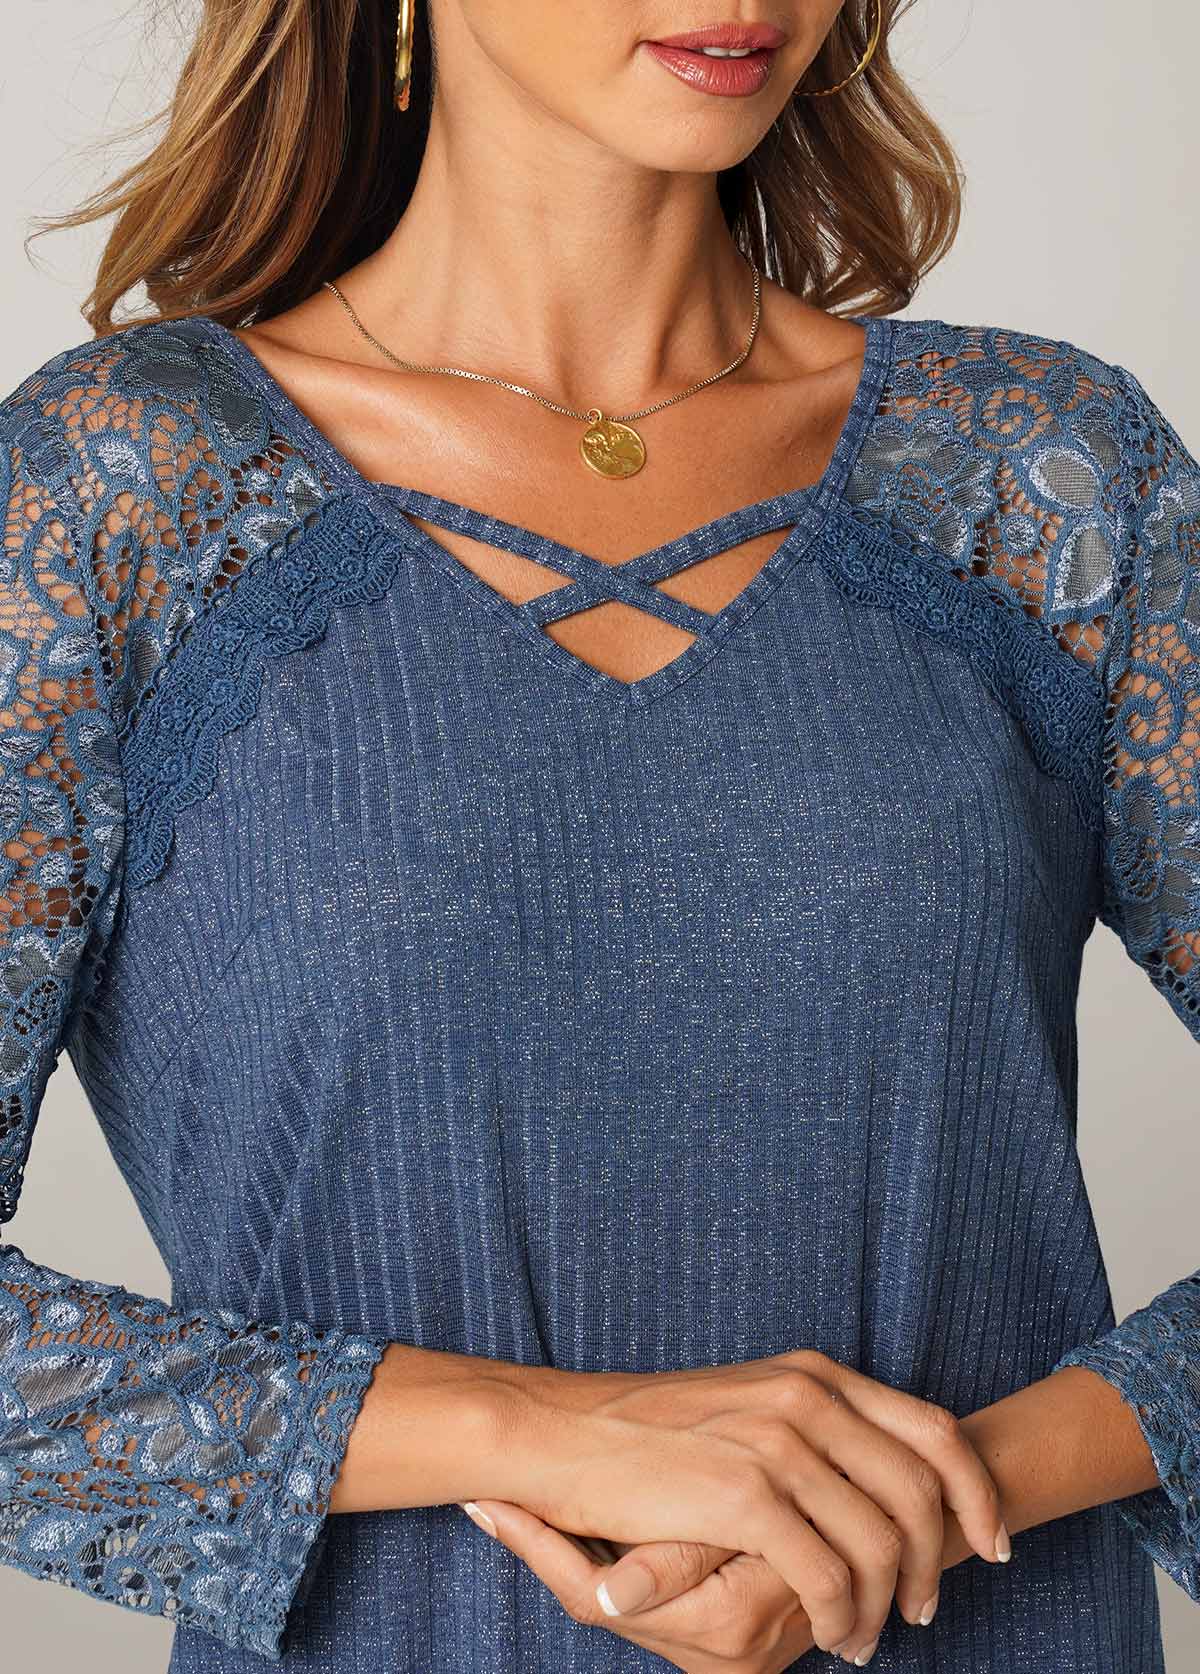 Blue Cross Strap Lace Stitching T Shirt